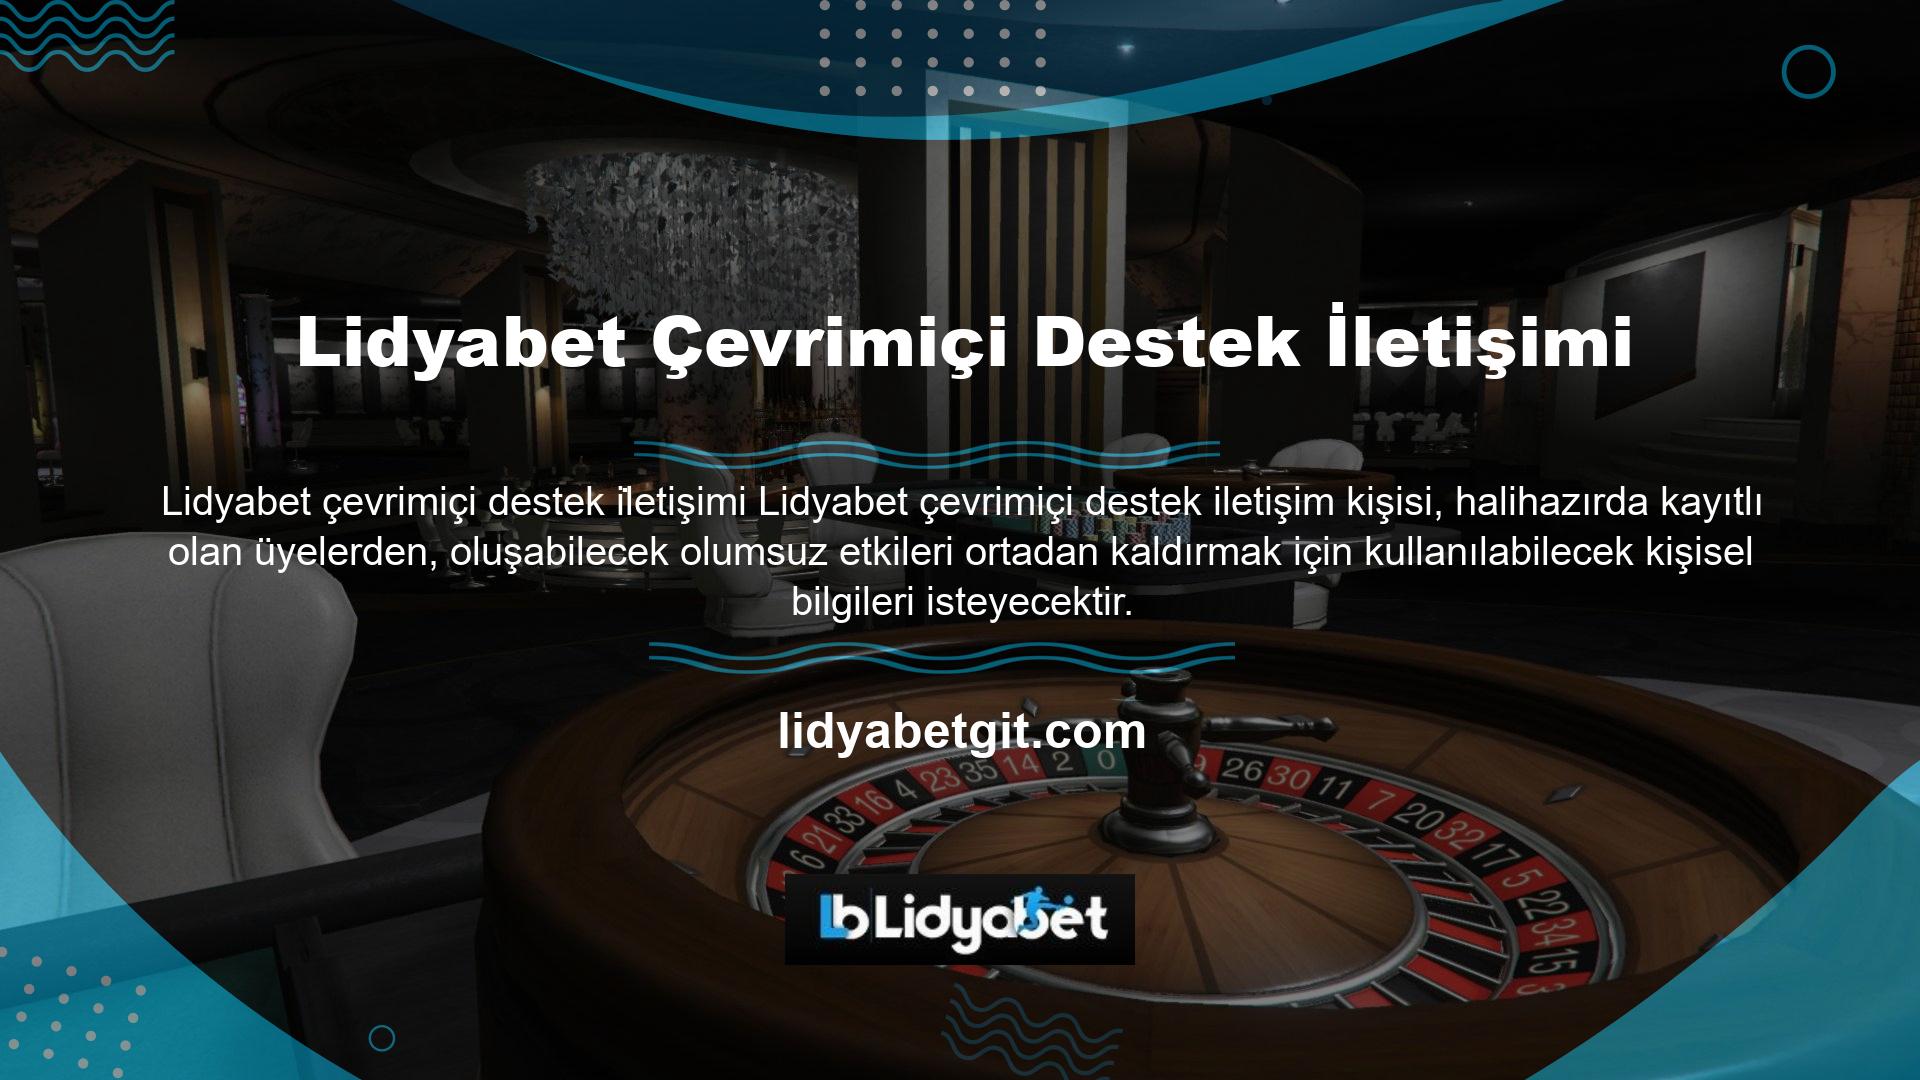 Lidyabet Mobile, oyuncuların internete bağlı bir cihazdan giriş yapmasına olanak tanır